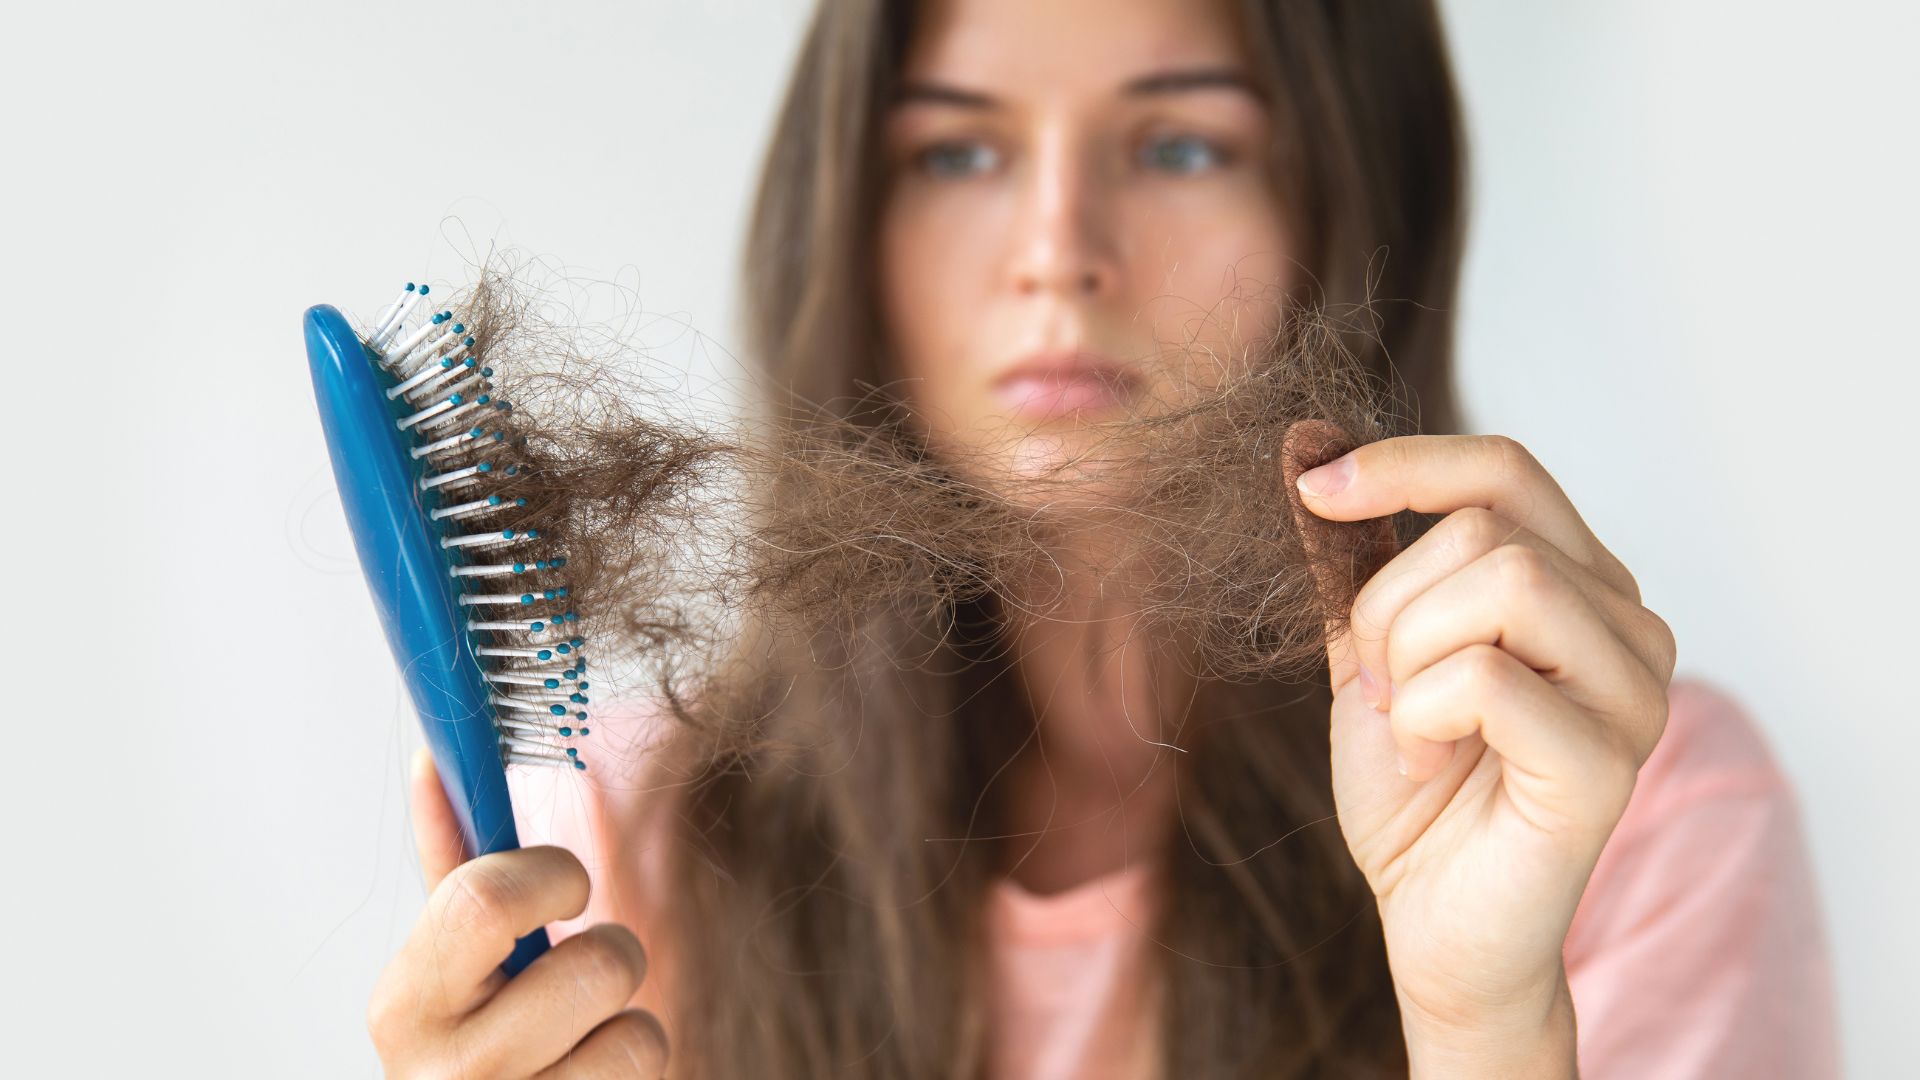 Rụng tóc nhiều ở nữ tuổi 17 có sao không? Cách khắc phục - Ảnh 1.